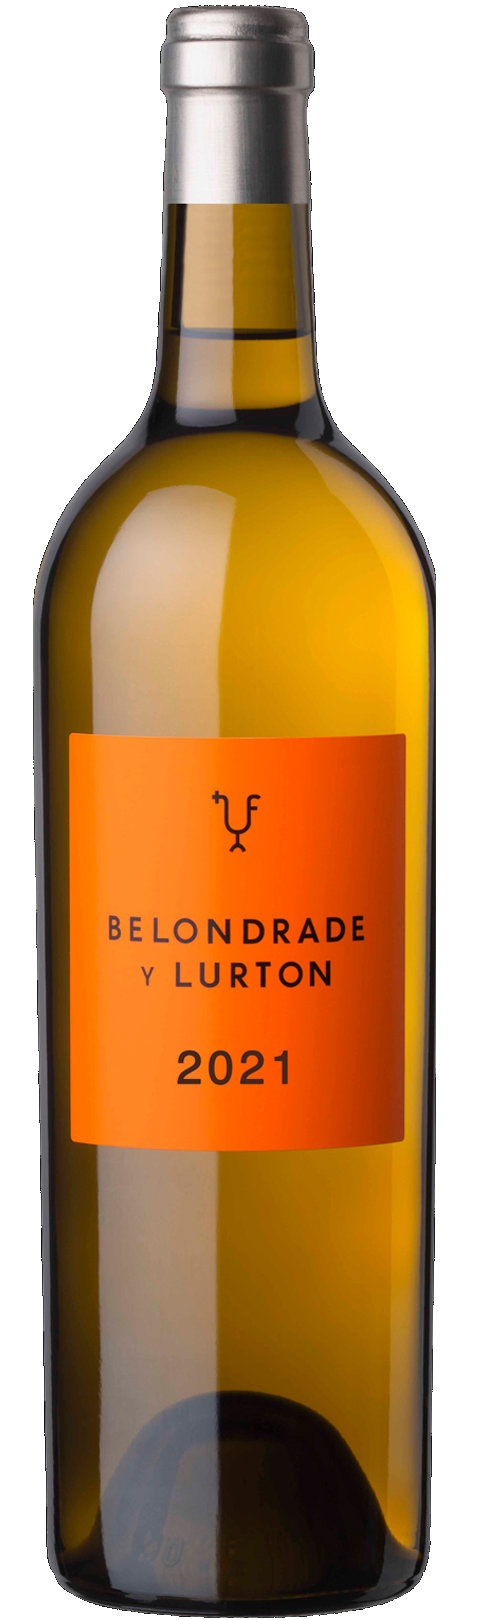 Belondrade y Lurton 2022 Weißwein